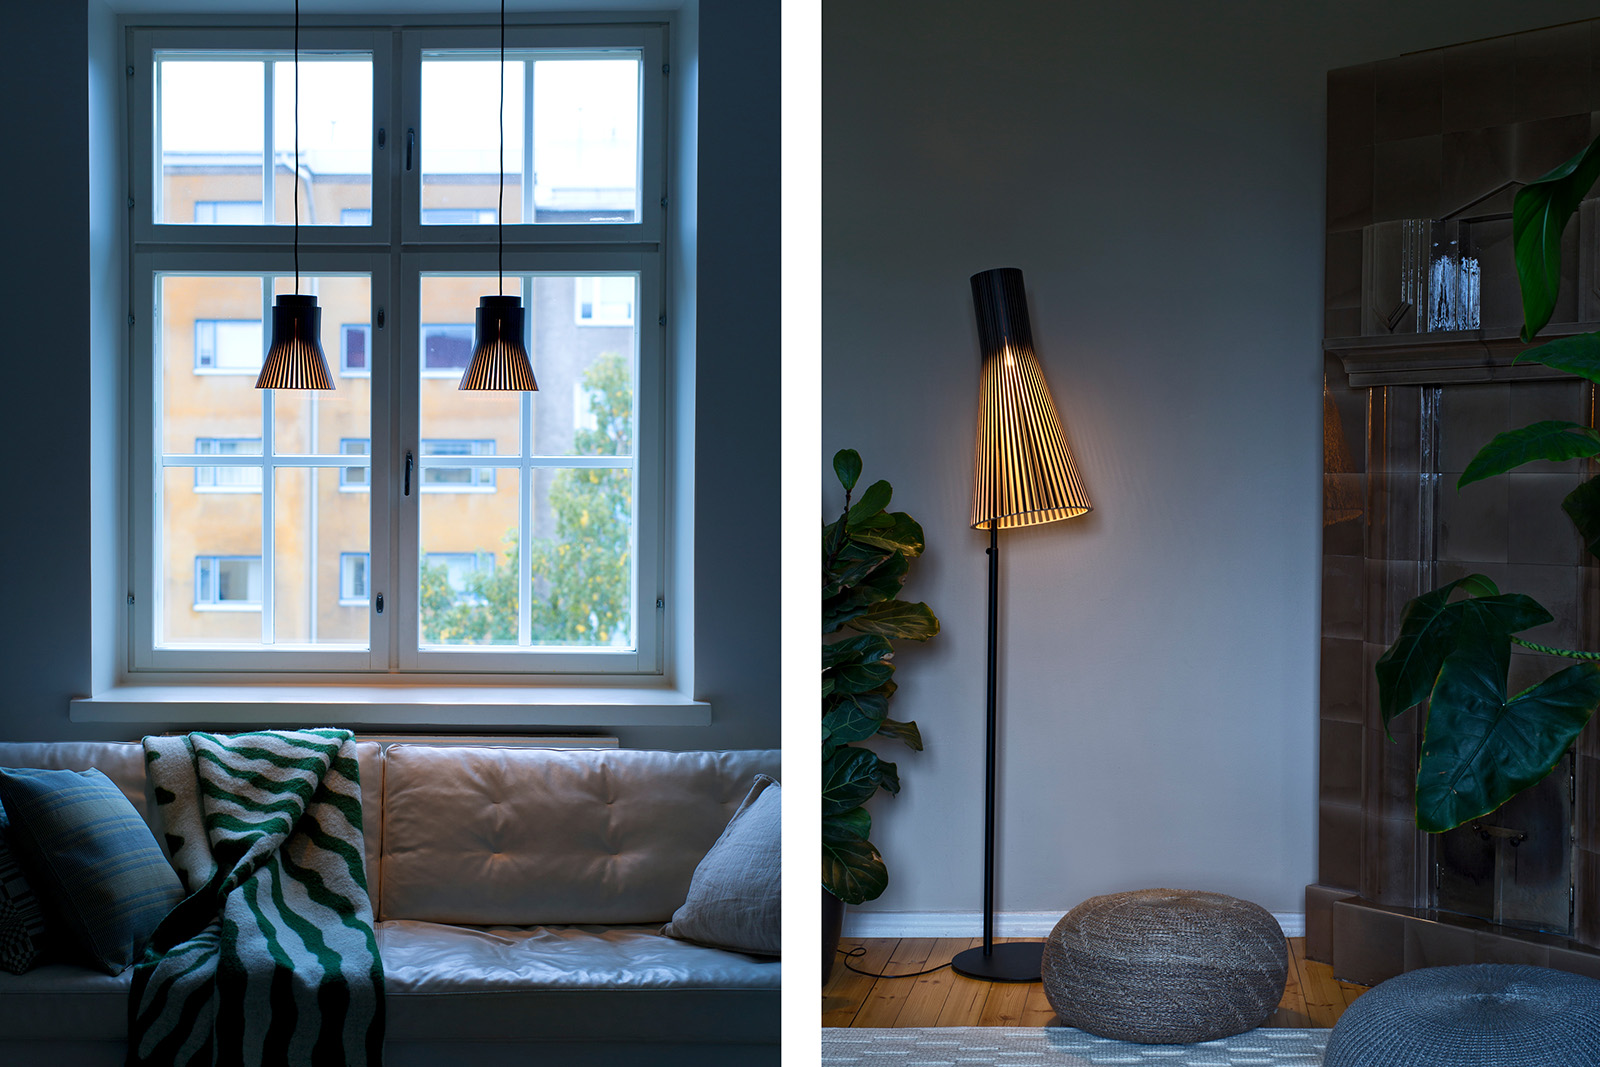 Deux image côte à côte : la première avec deux suspensions en face d’une fenêtre et la seconde avec un lampadaire à côté d’un feu ouvert.